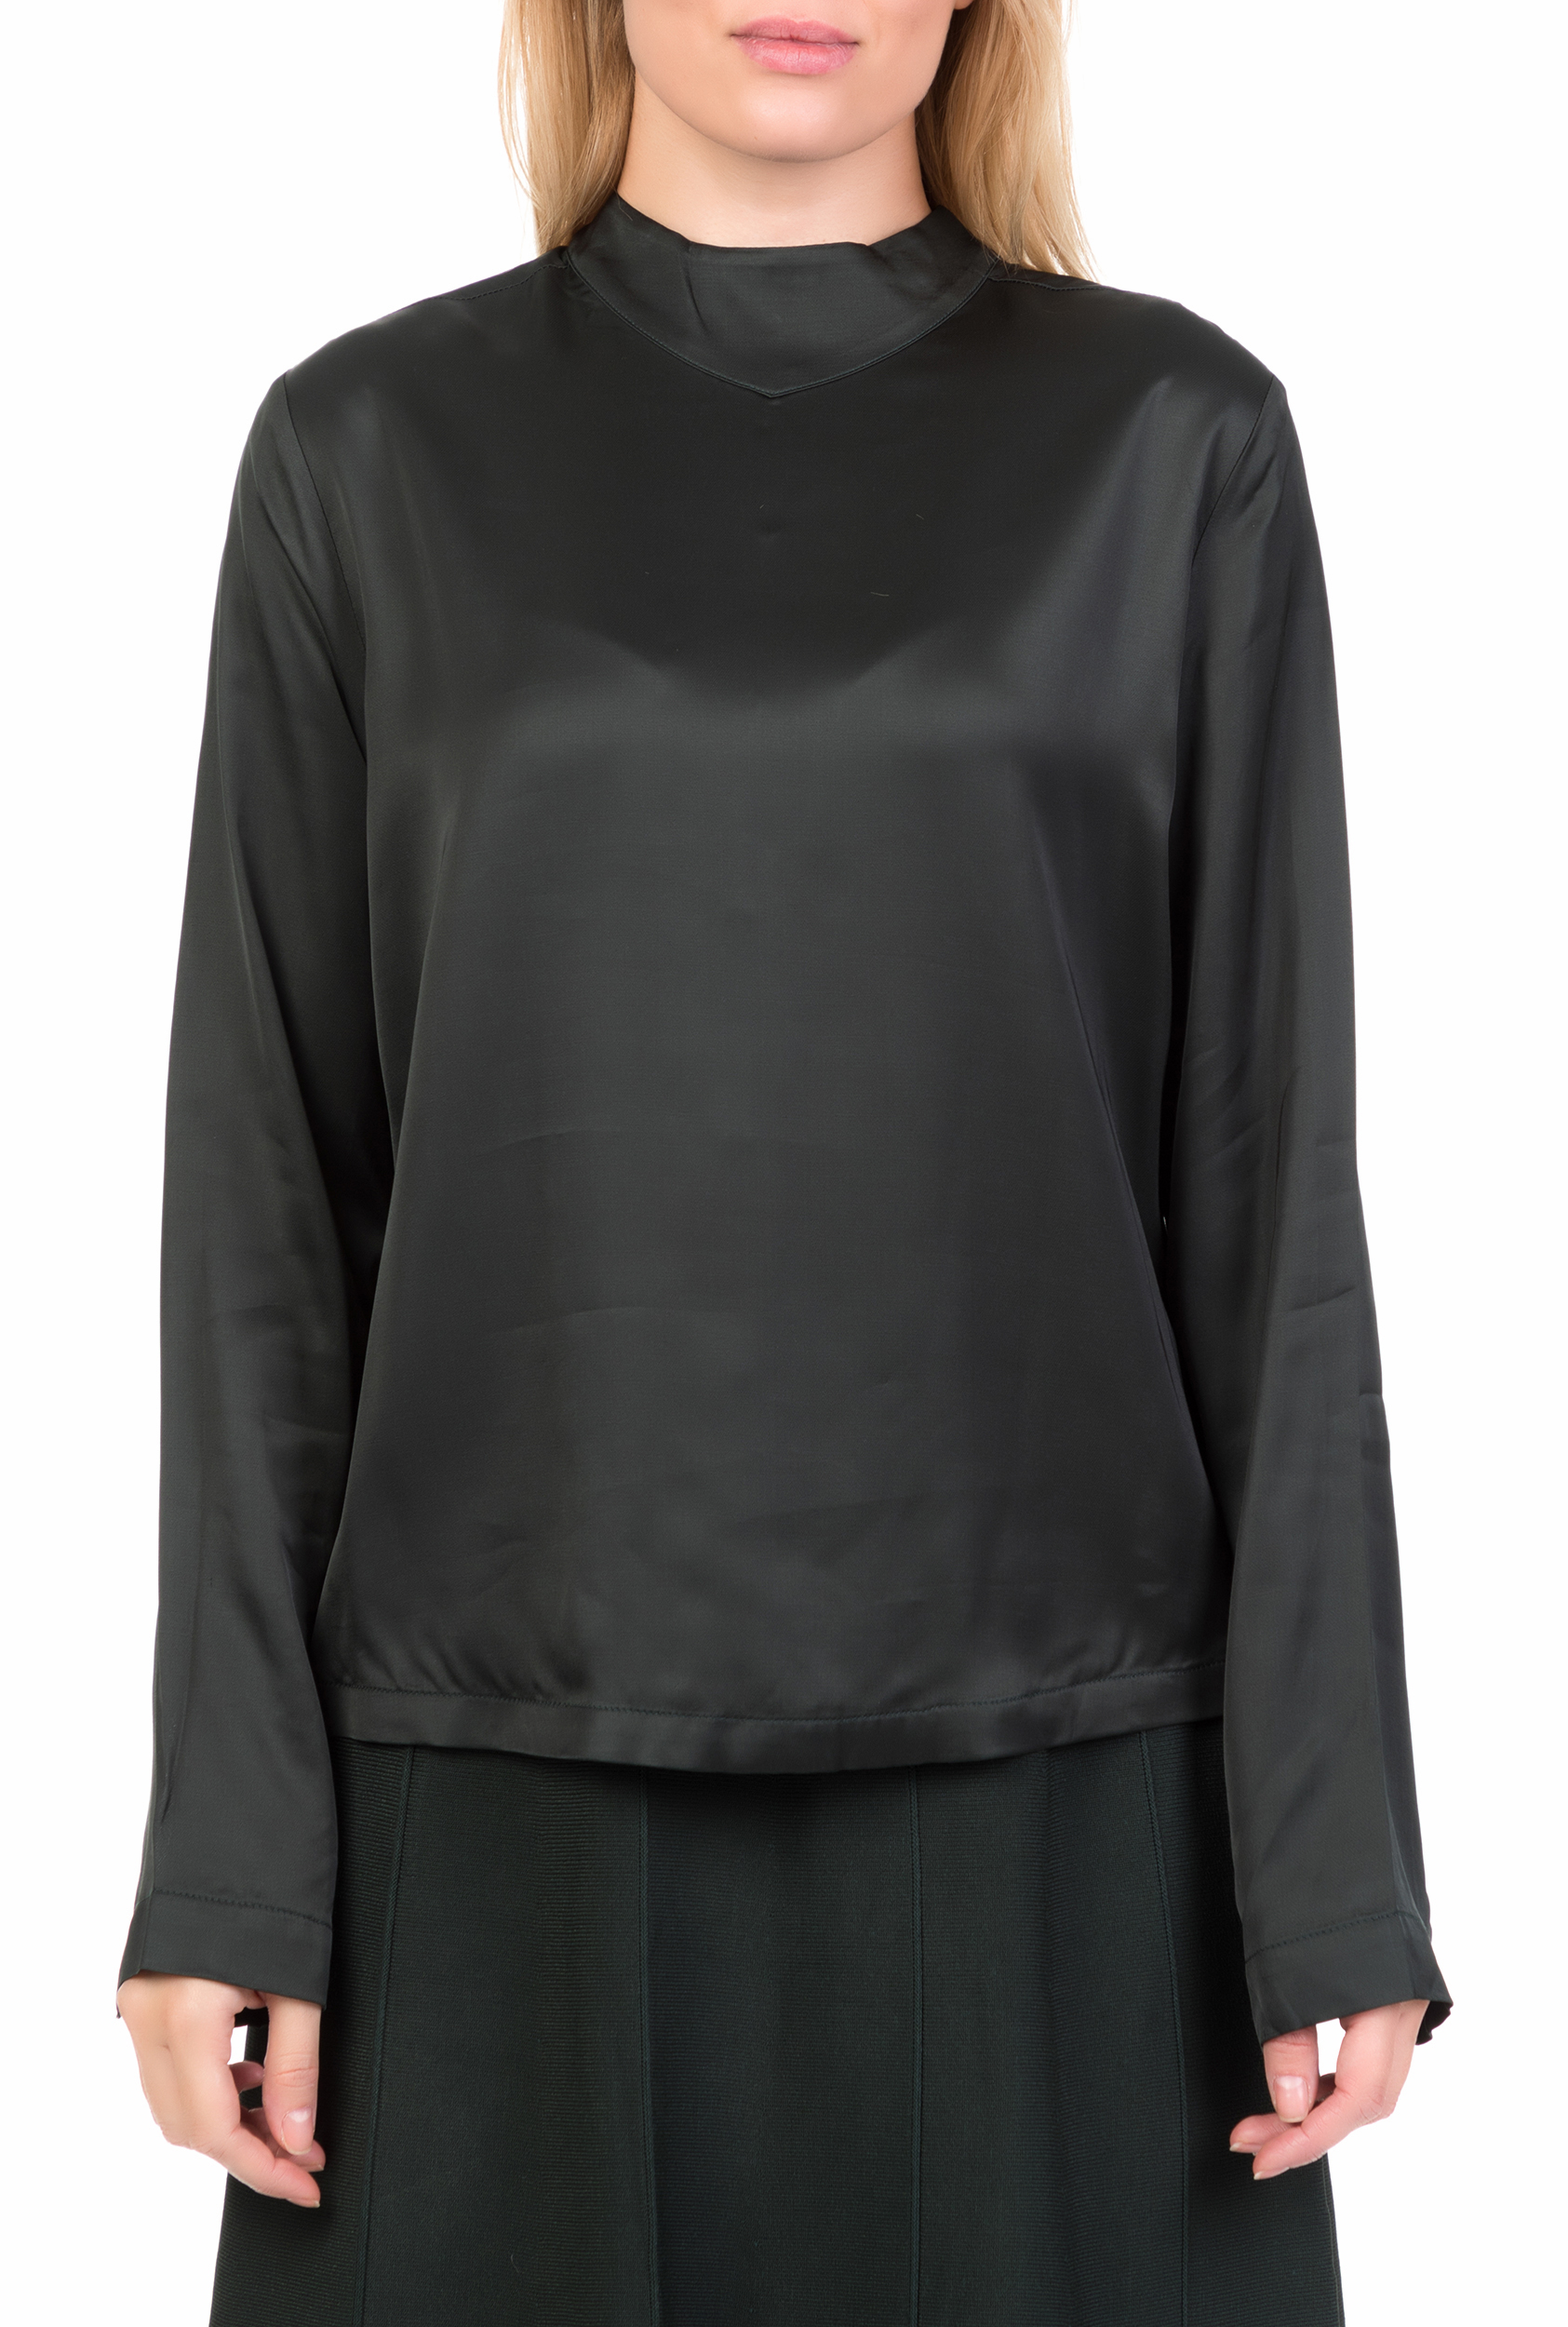 SCOTCH & SODA SCOTCH & SODA - Γυναικεία μακρυμάνικη μπλούζα με κουμπιά SCOTCH & SODA μαύρη